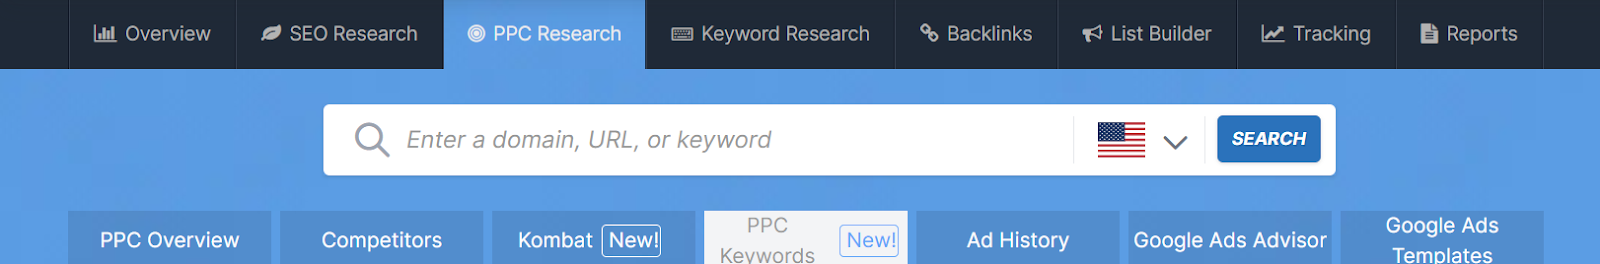 spyfu search bar